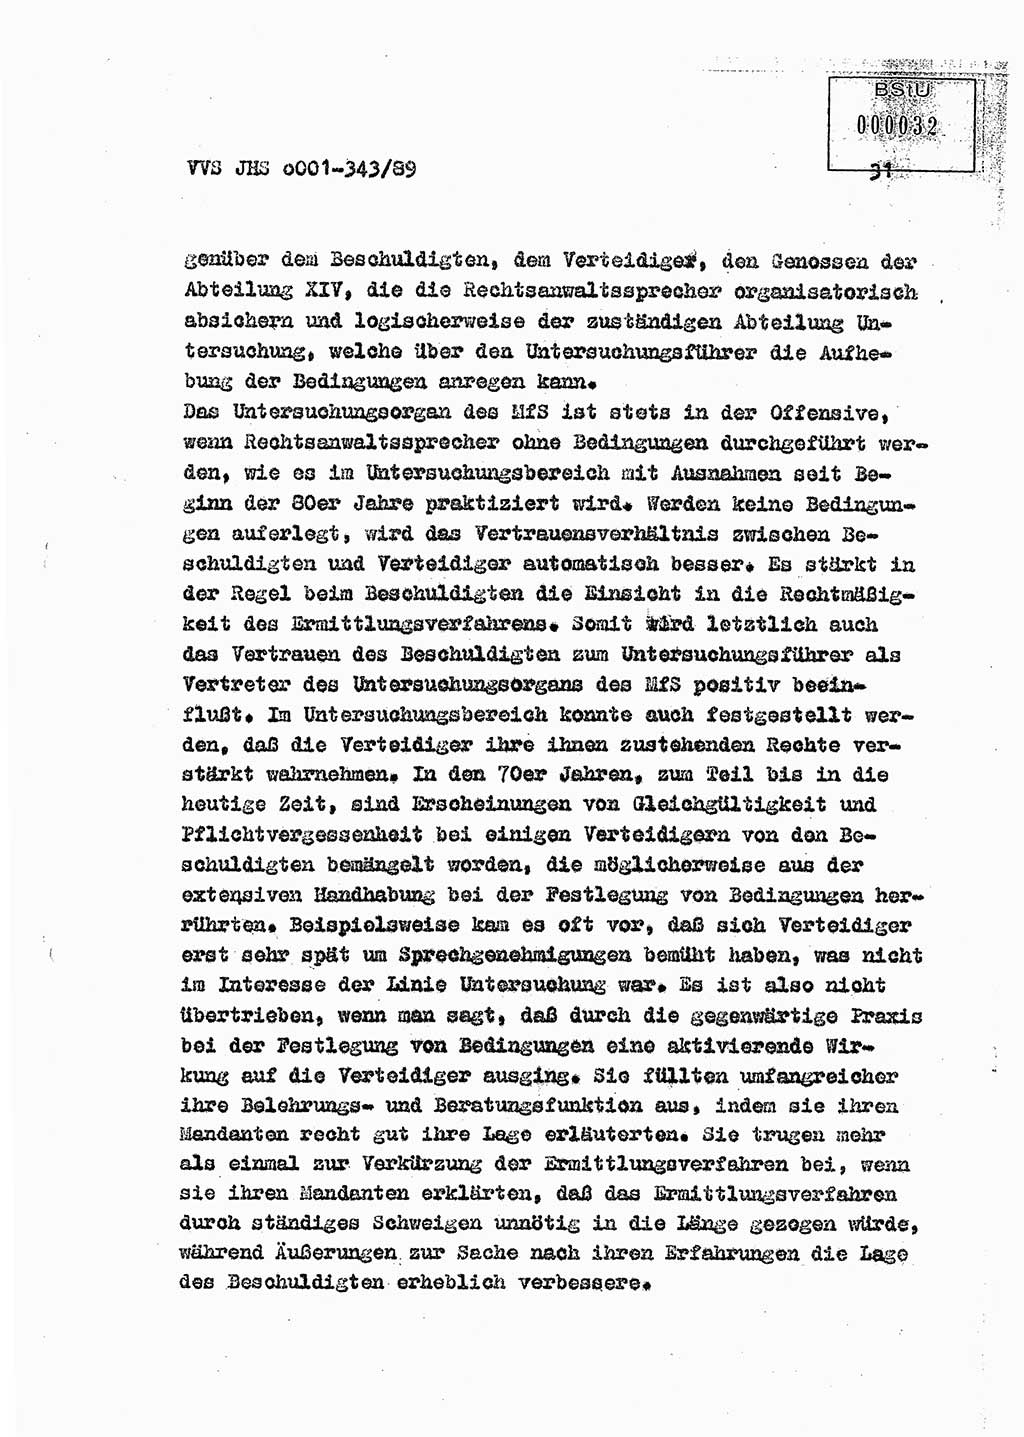 Diplomarbeit Offiziersschüler Axel Henschke (HA Ⅸ/9), Ministerium für Staatssicherheit (MfS) [Deutsche Demokratische Republik (DDR)], Juristische Hochschule (JHS), Vertrauliche Verschlußsache (VVS) o001-343/89, Potsdam 1989, Seite 31 (Dipl.-Arb. MfS DDR JHS VVS o001-343/89 1989, S. 31)